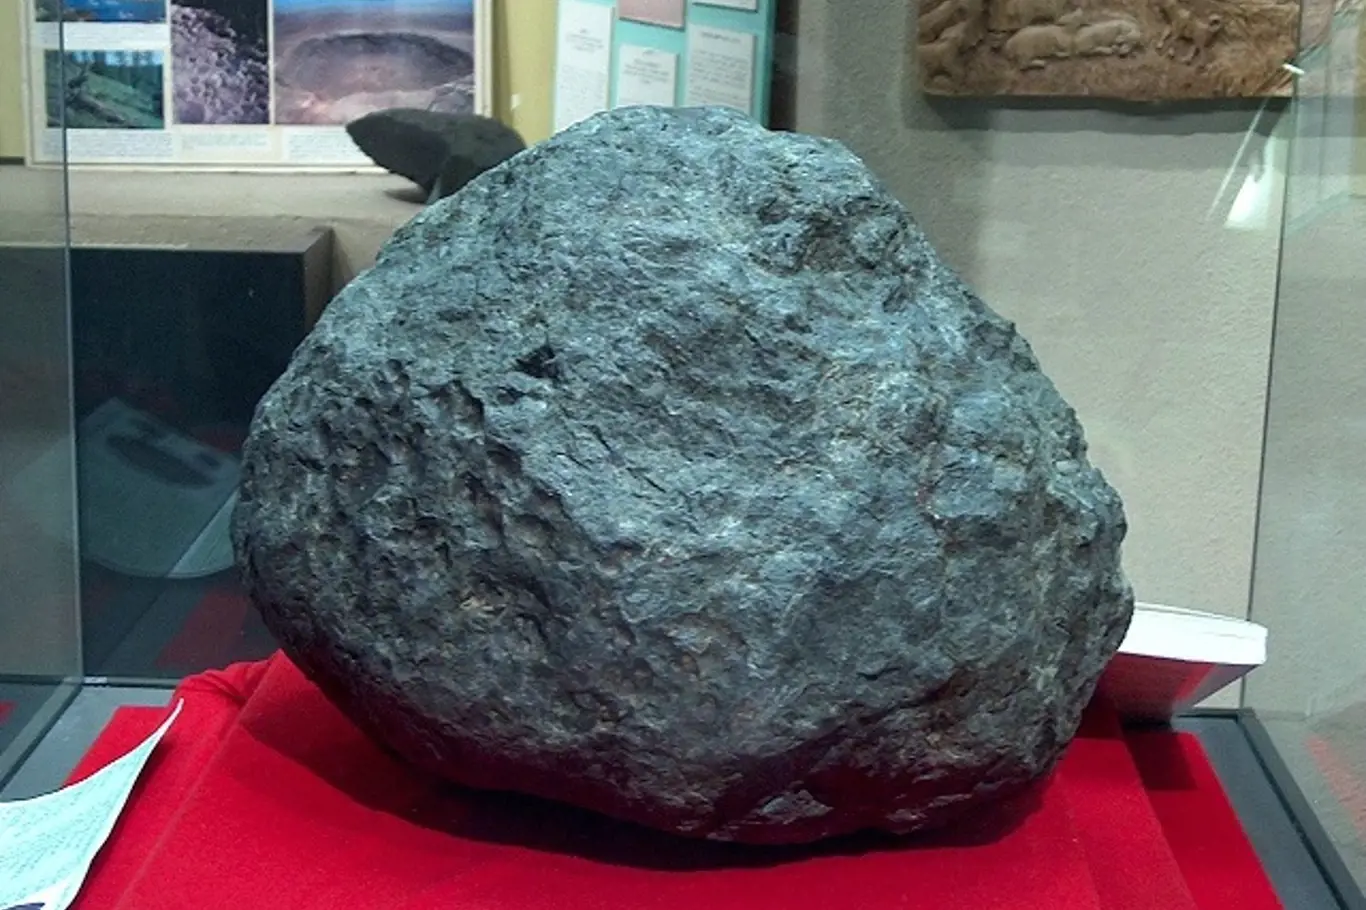 Meteorit z Ensisheimu